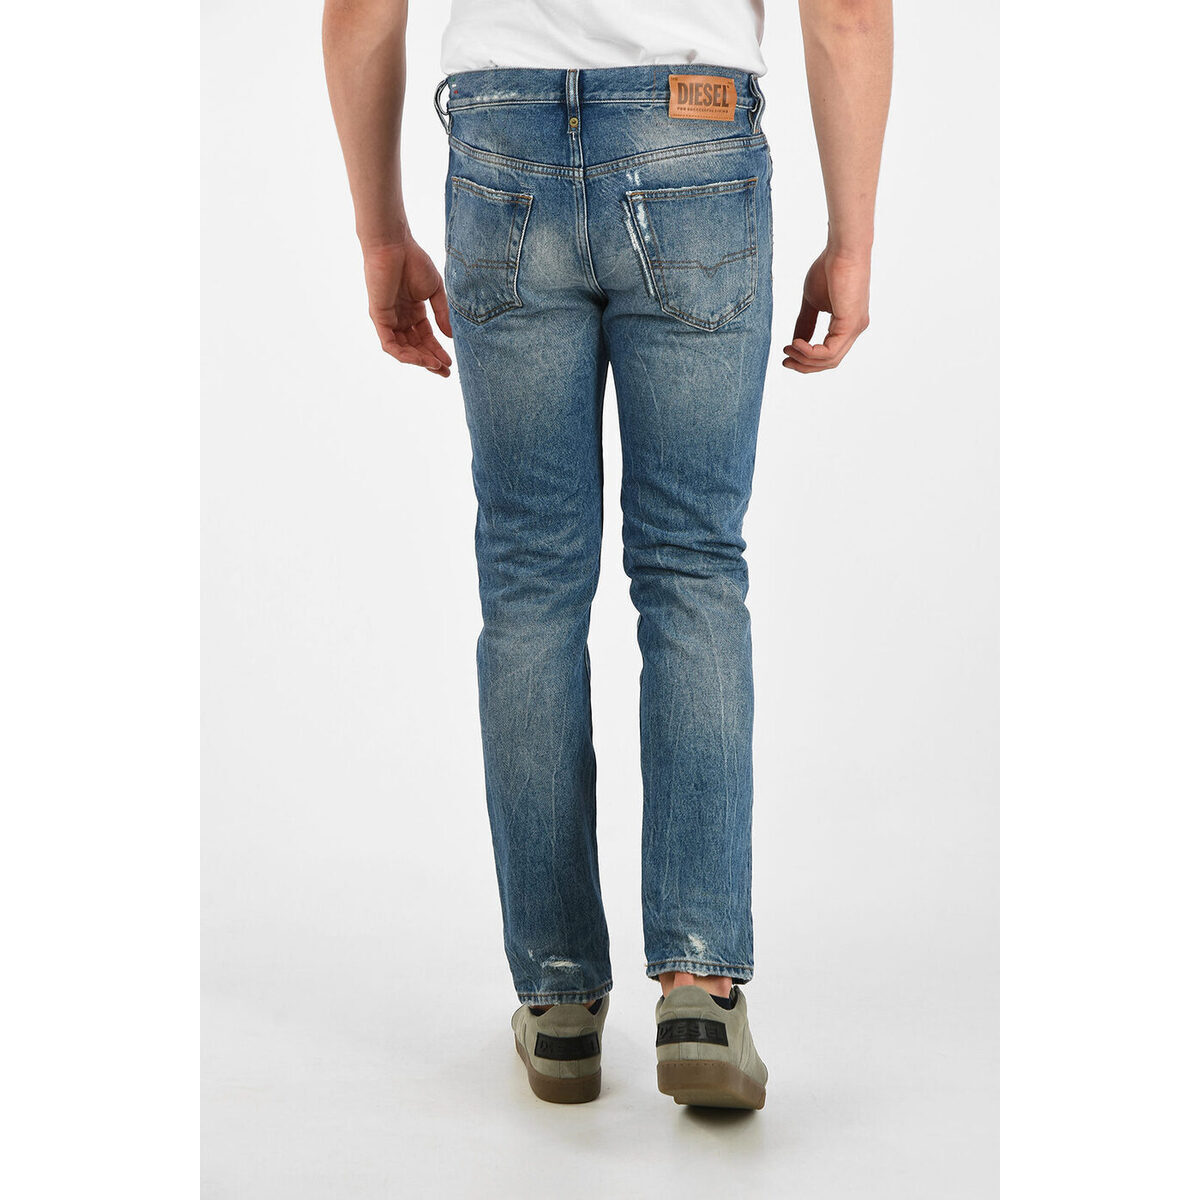 超特価激安 DIESEL/ディーゼル Blue メンズ 16cm Vintage Effect MHARKY Slim Fit Jeans L34  dk 【コンビニ受取対応商品】 -m3ali.tv